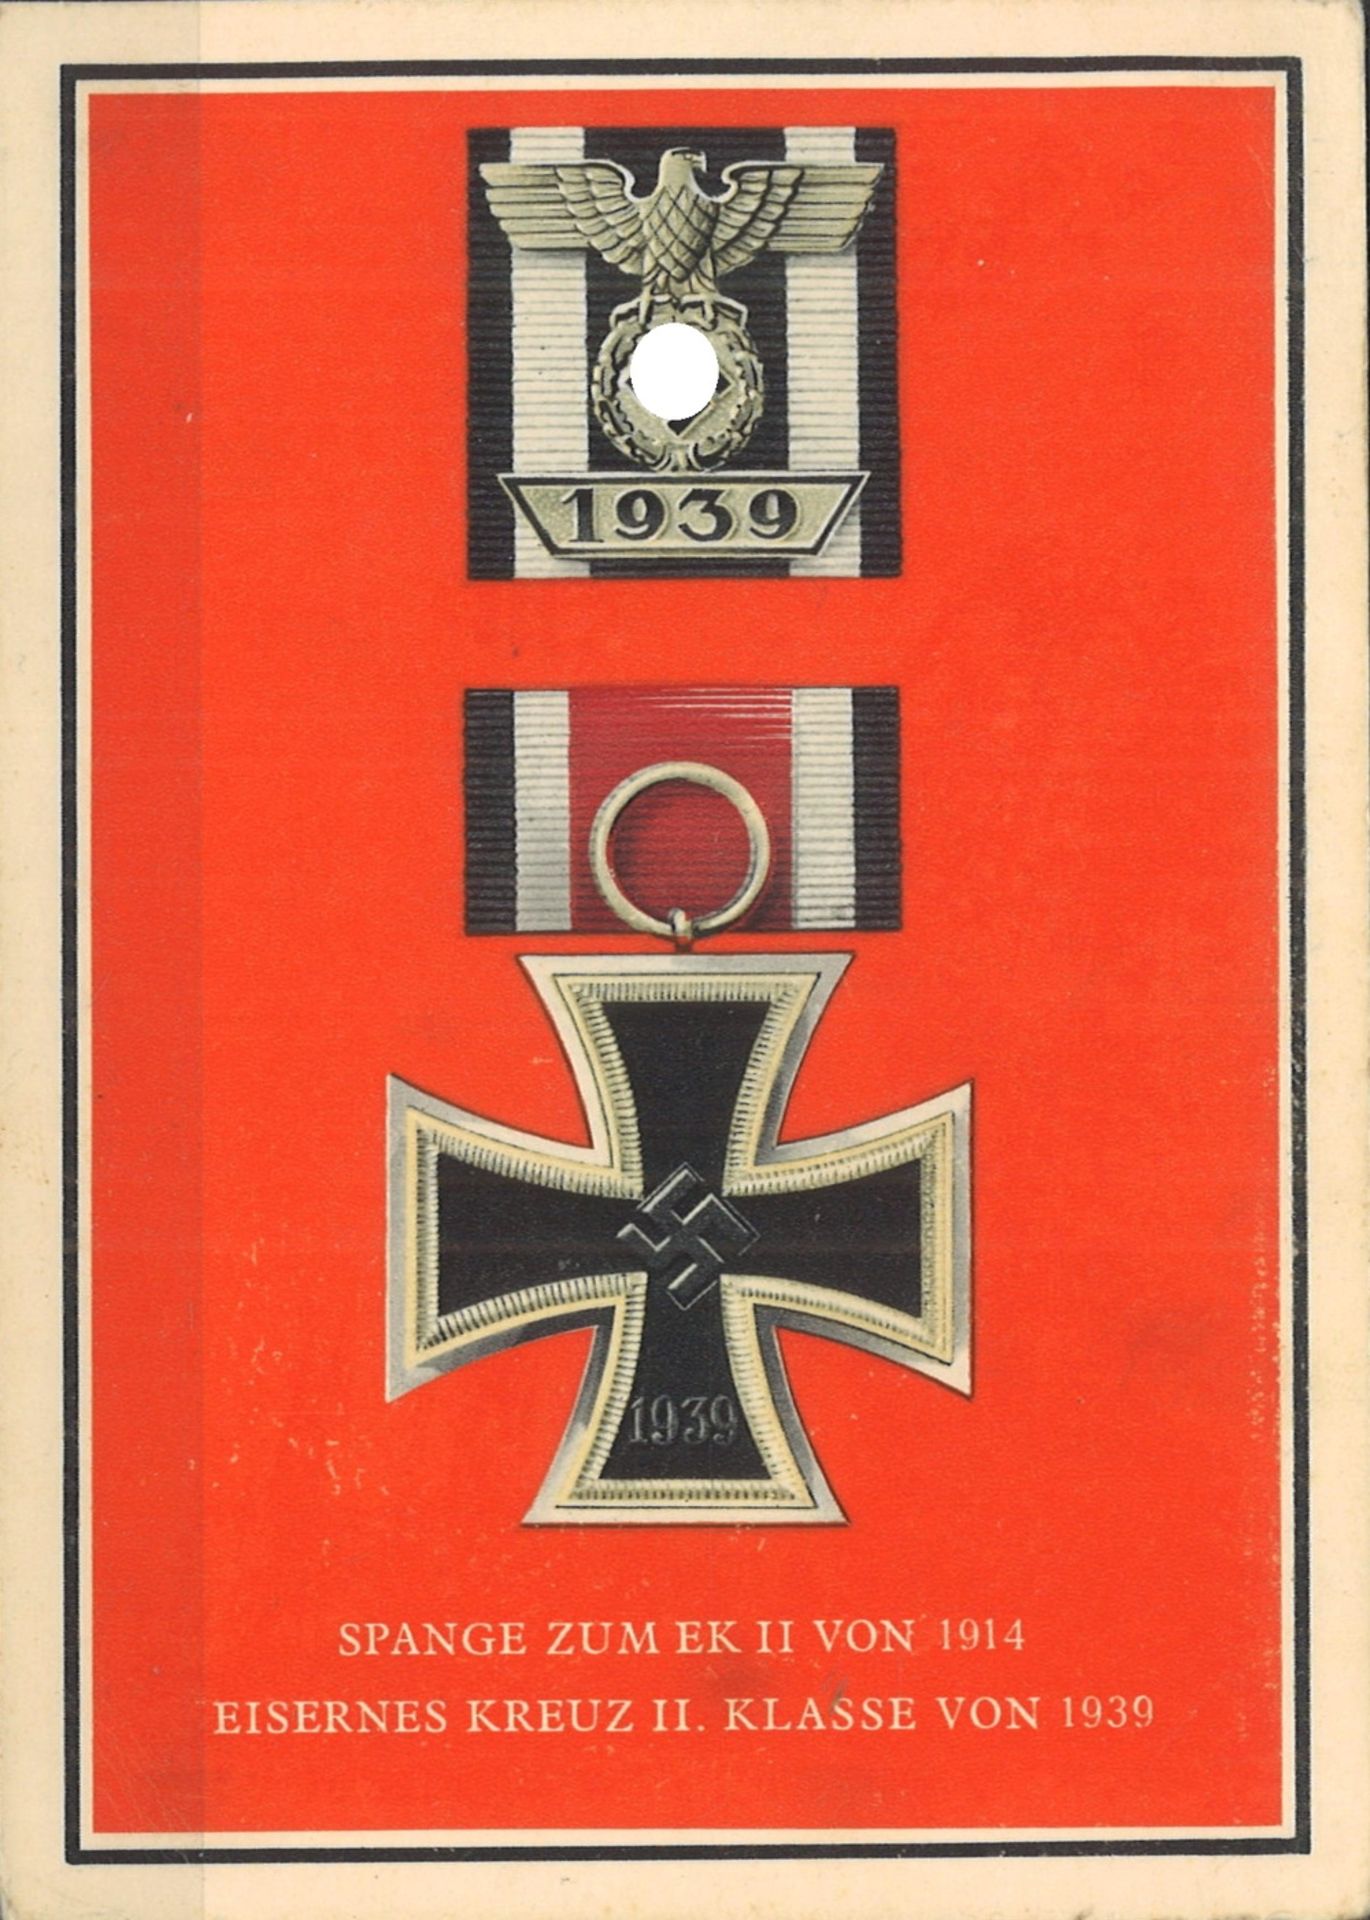 Drittes Reich, Propaganda Karte "Spange zum EK II von 1914"